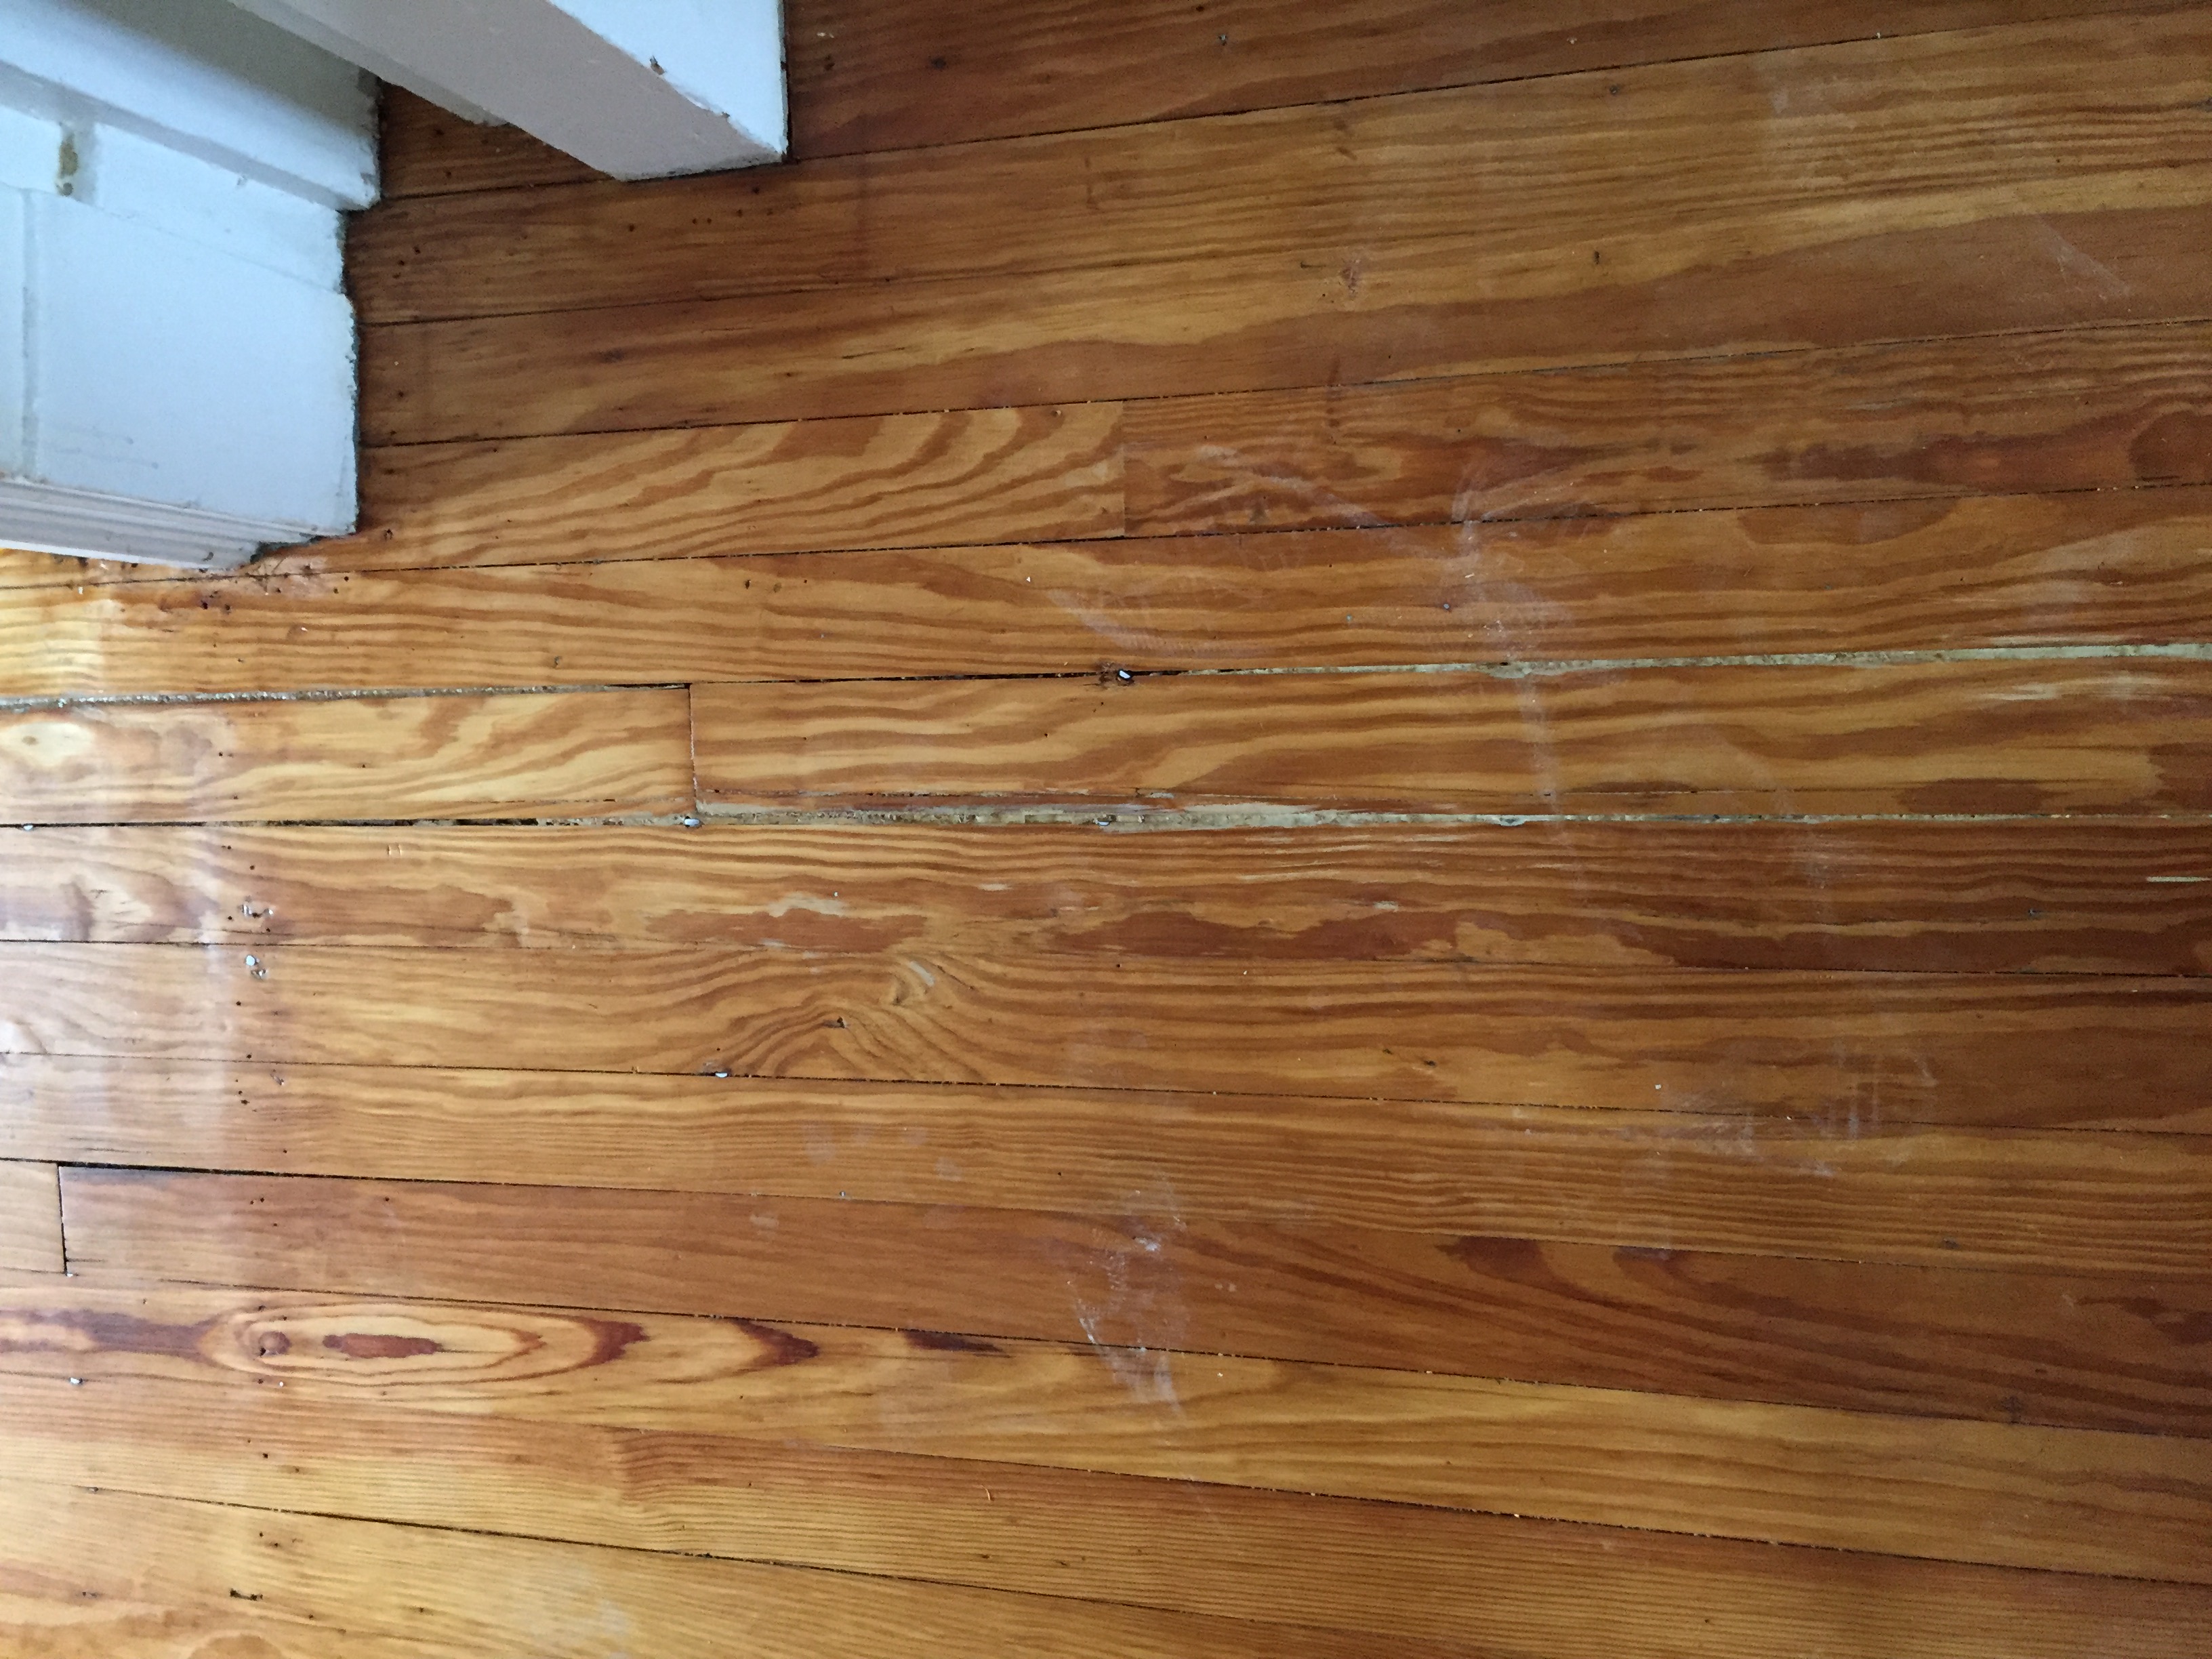 pine wood flooring help how to repair these pine hardwood floor 100years old!!-img_7842.jpg CJMISJV